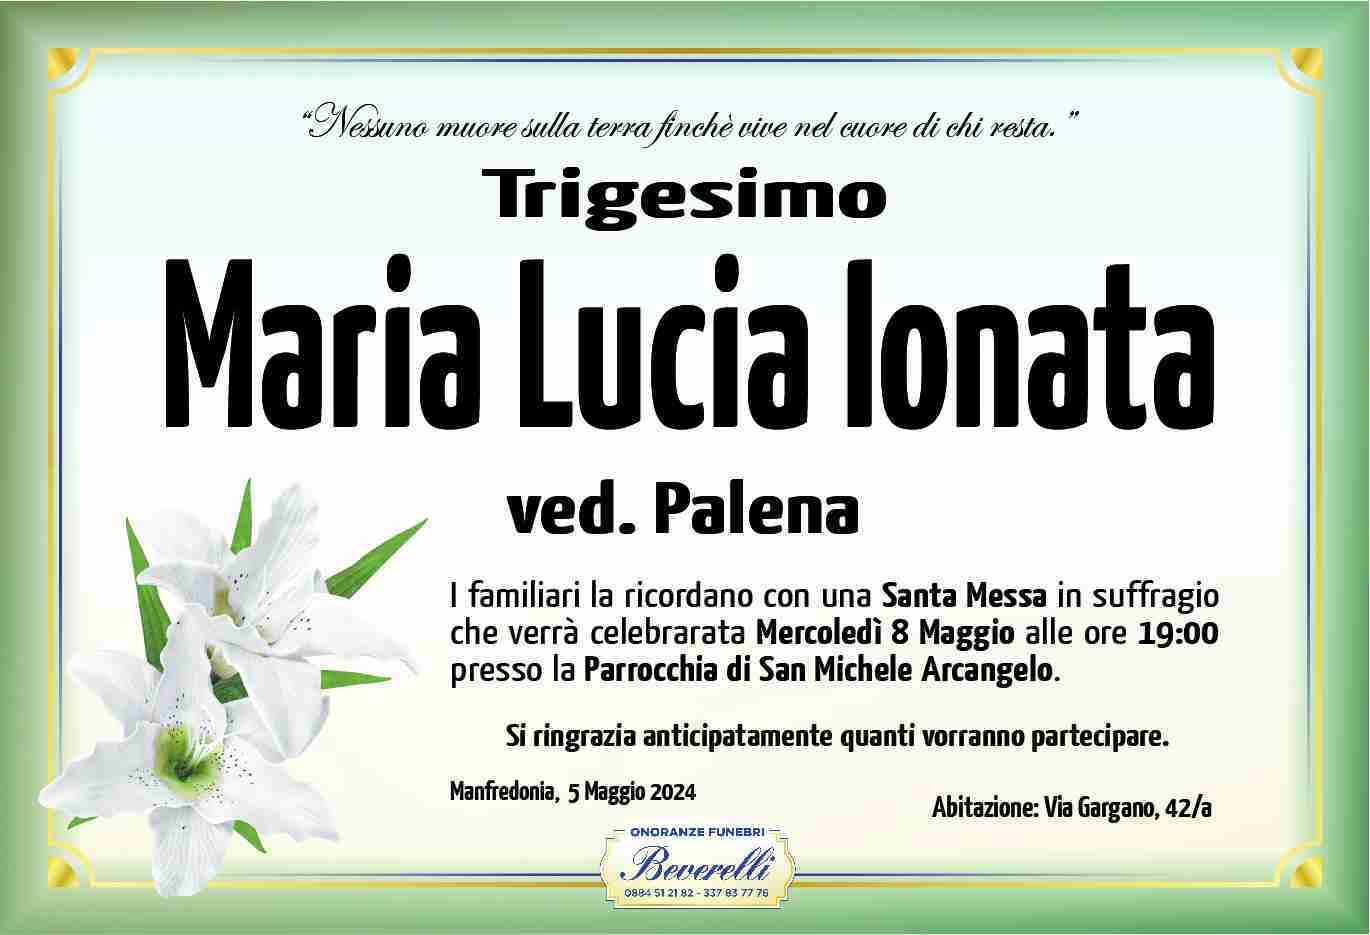 Maria Lucia Ionata